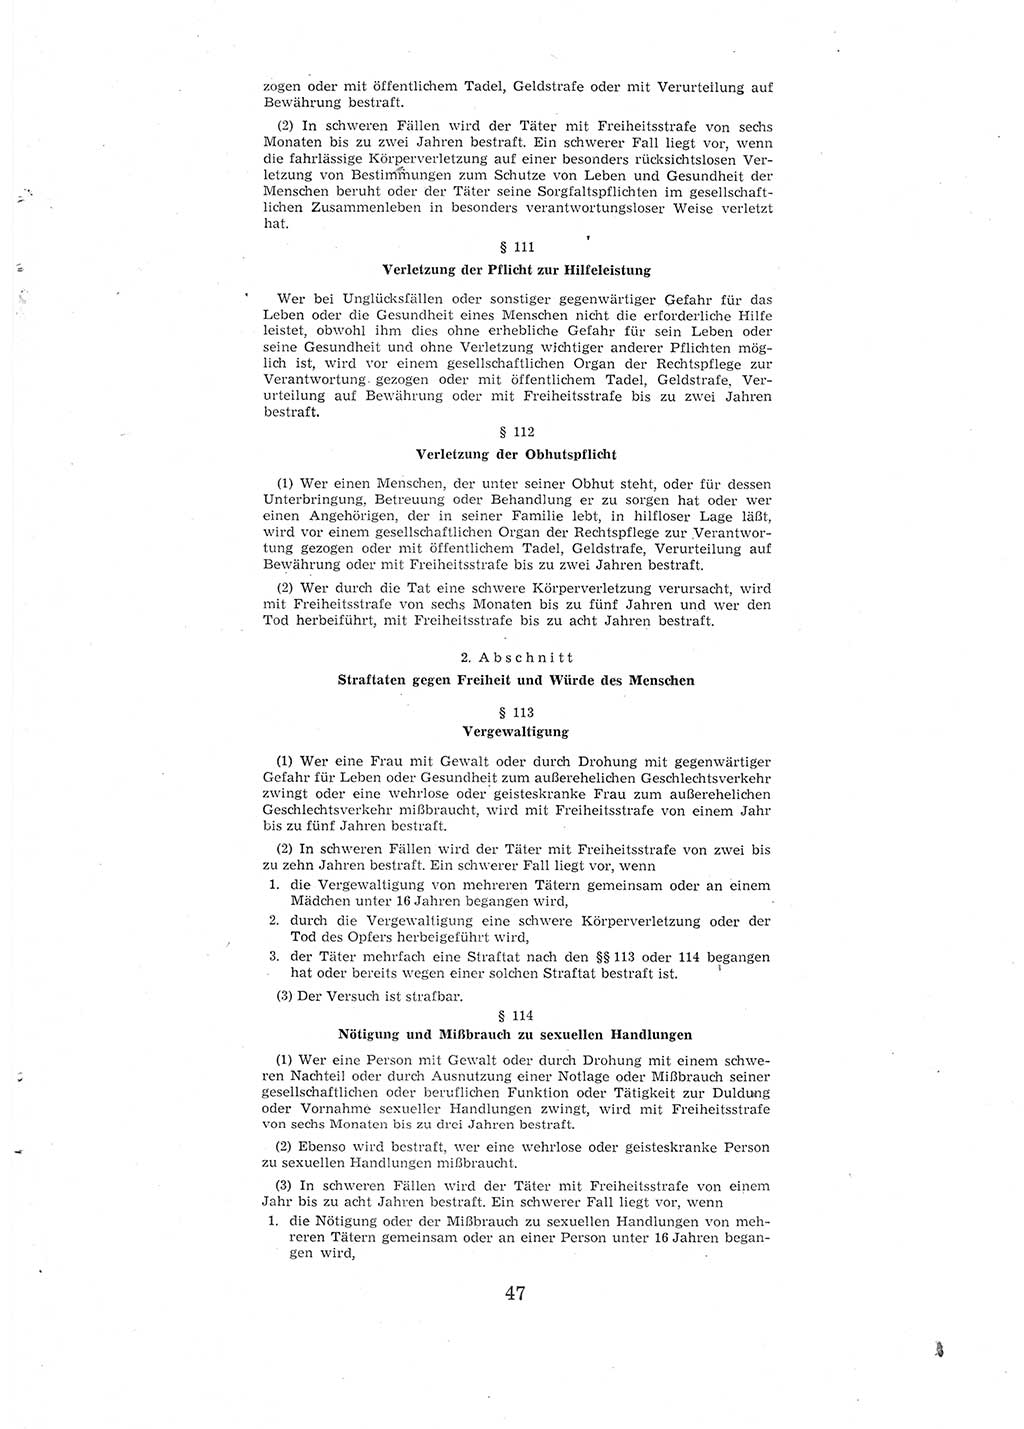 Entwurf des Strafgesetzbuches (StGB) der Deutschen Demokratischen Republik (DDR) 1967, Seite 47 (Entw. StGB DDR 1967, S. 47)